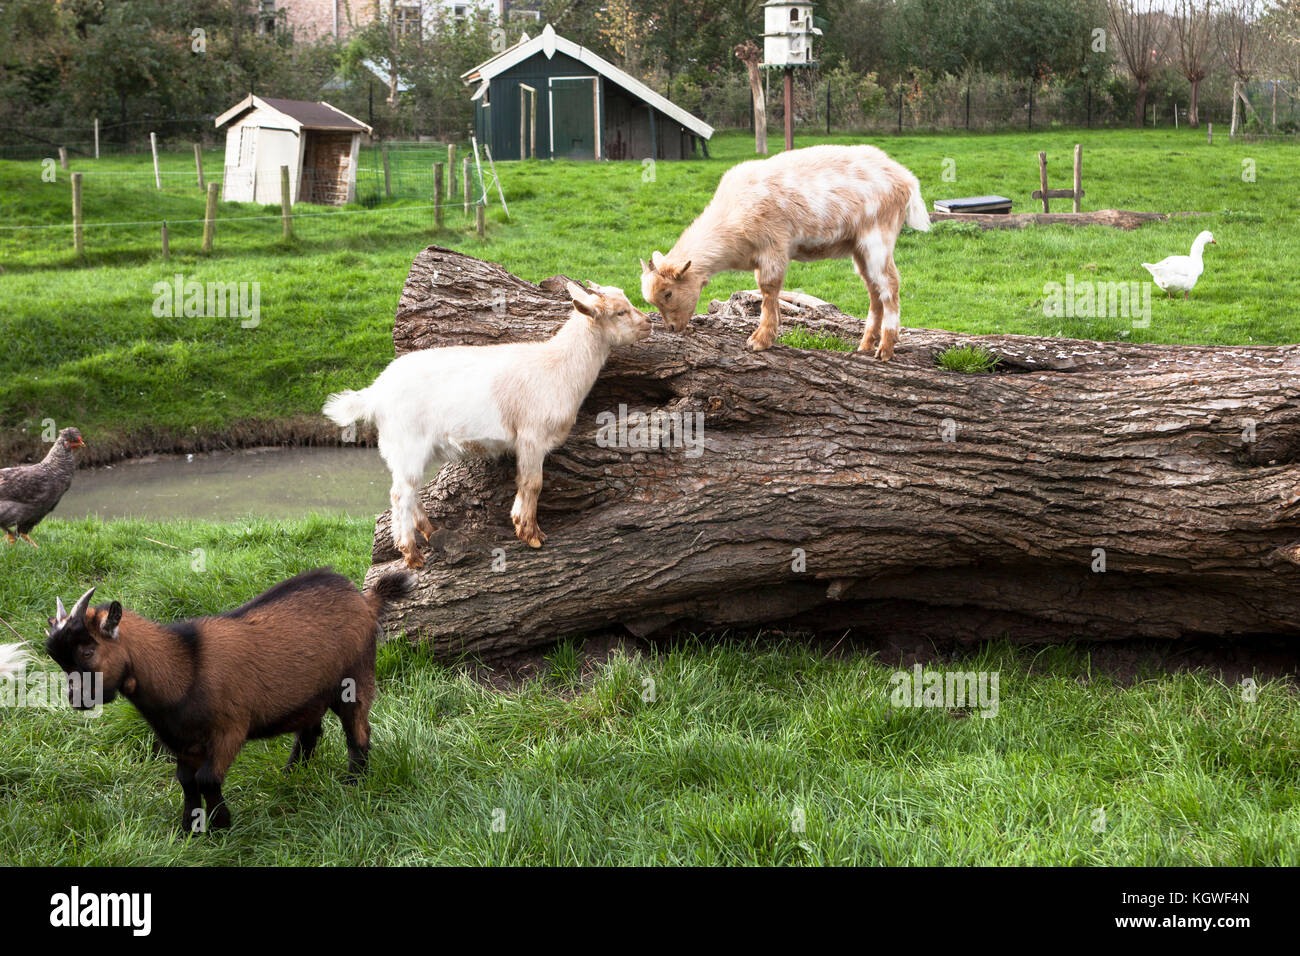 Netherlands, Zeeland, goats and poultry on a farm.  Niederlande, Zeeland, Ziegen und Gefluegel auf einem Bauernhof. Stock Photo